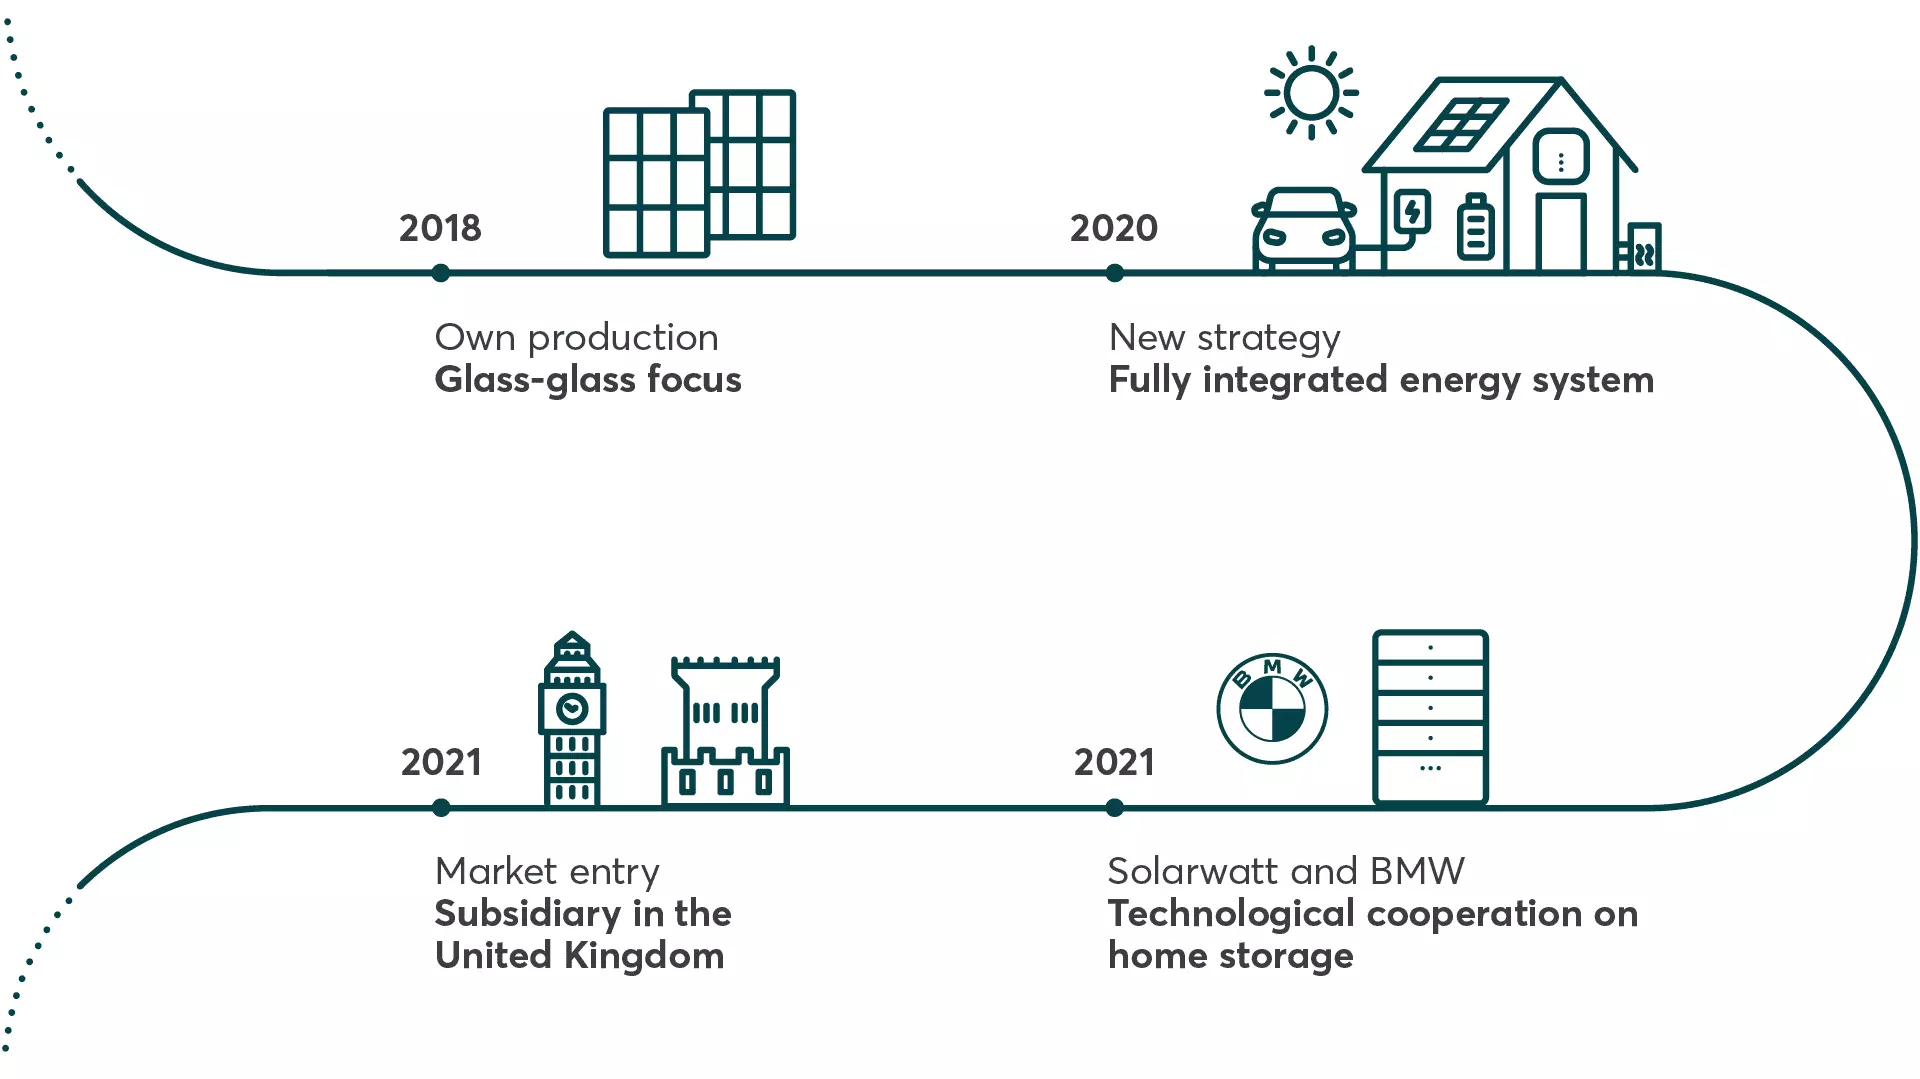 Solarwatt history 2018 - 2021